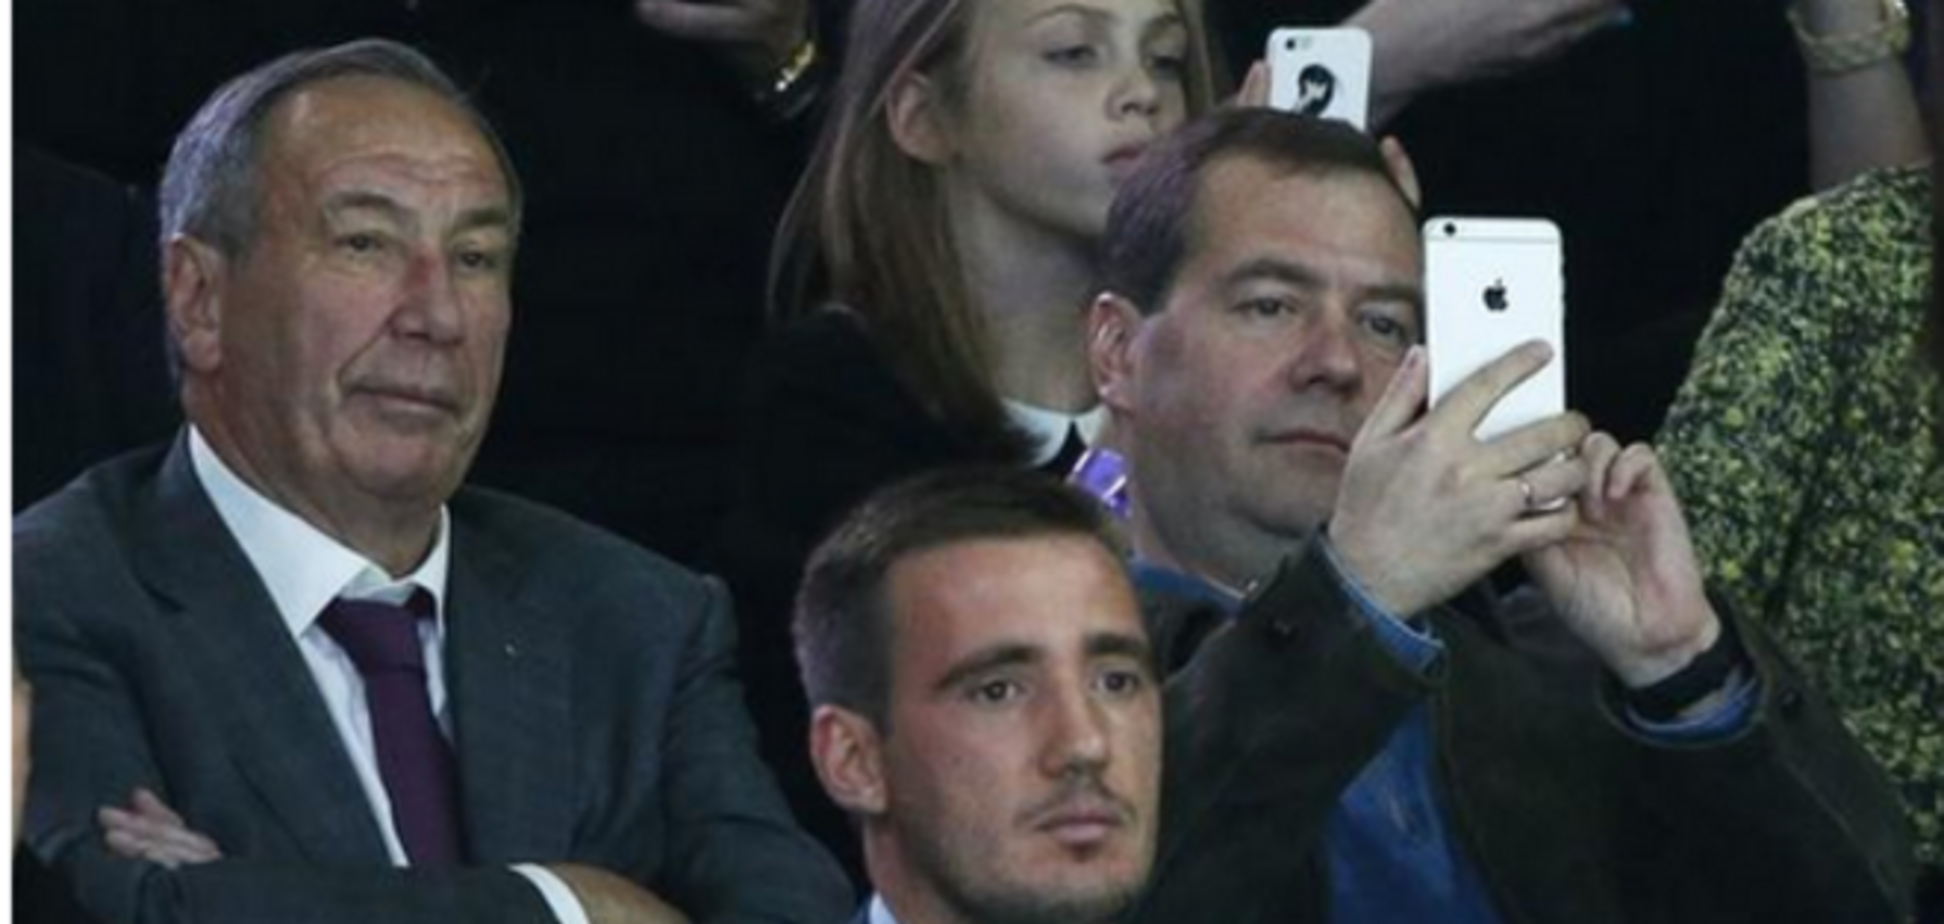 Медведев, не смотря на грядущий запрет пользования айфонами, засветился на фото с новеньким iPhone 6 